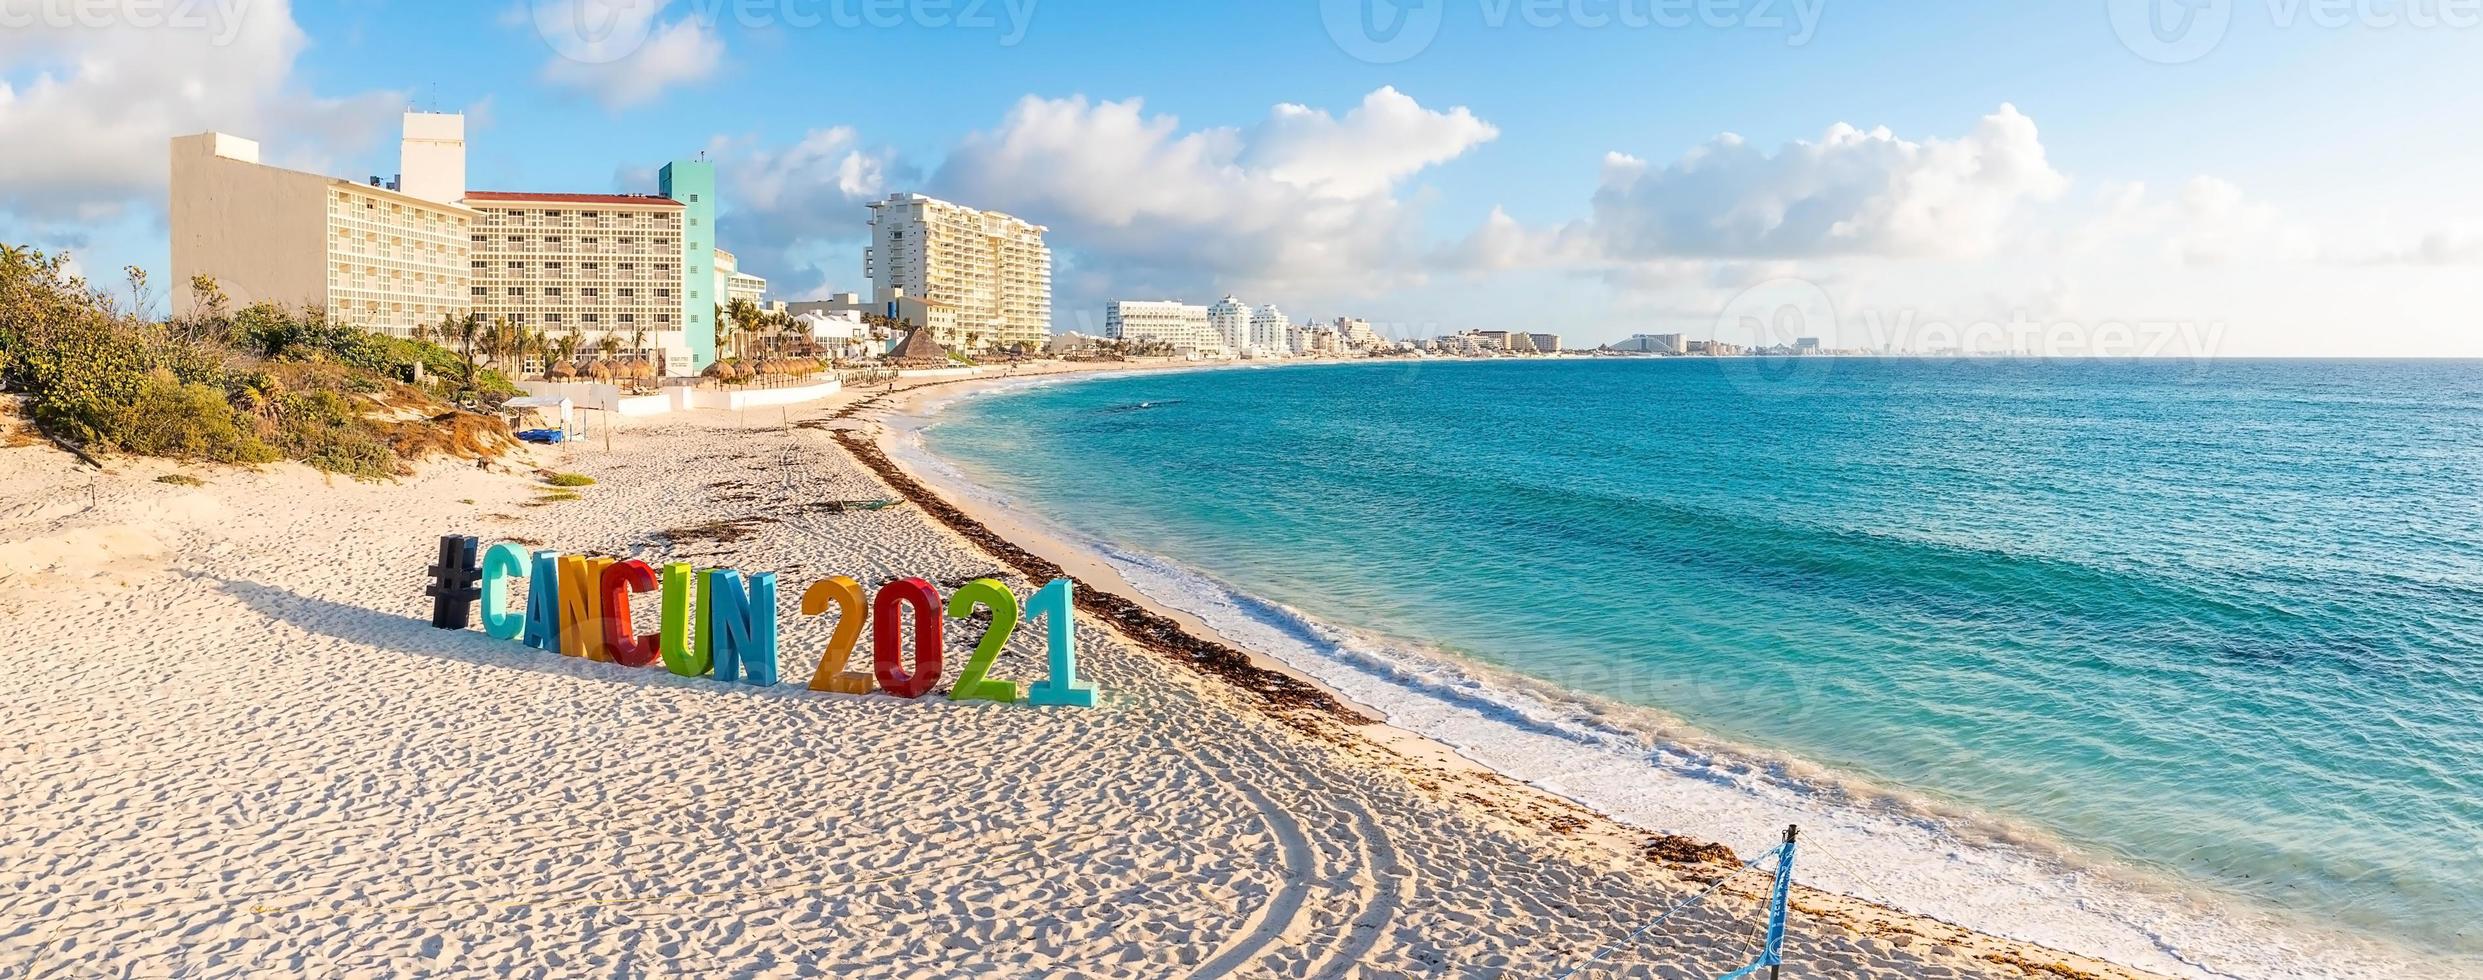 vista del letrero cancun 2021 foto